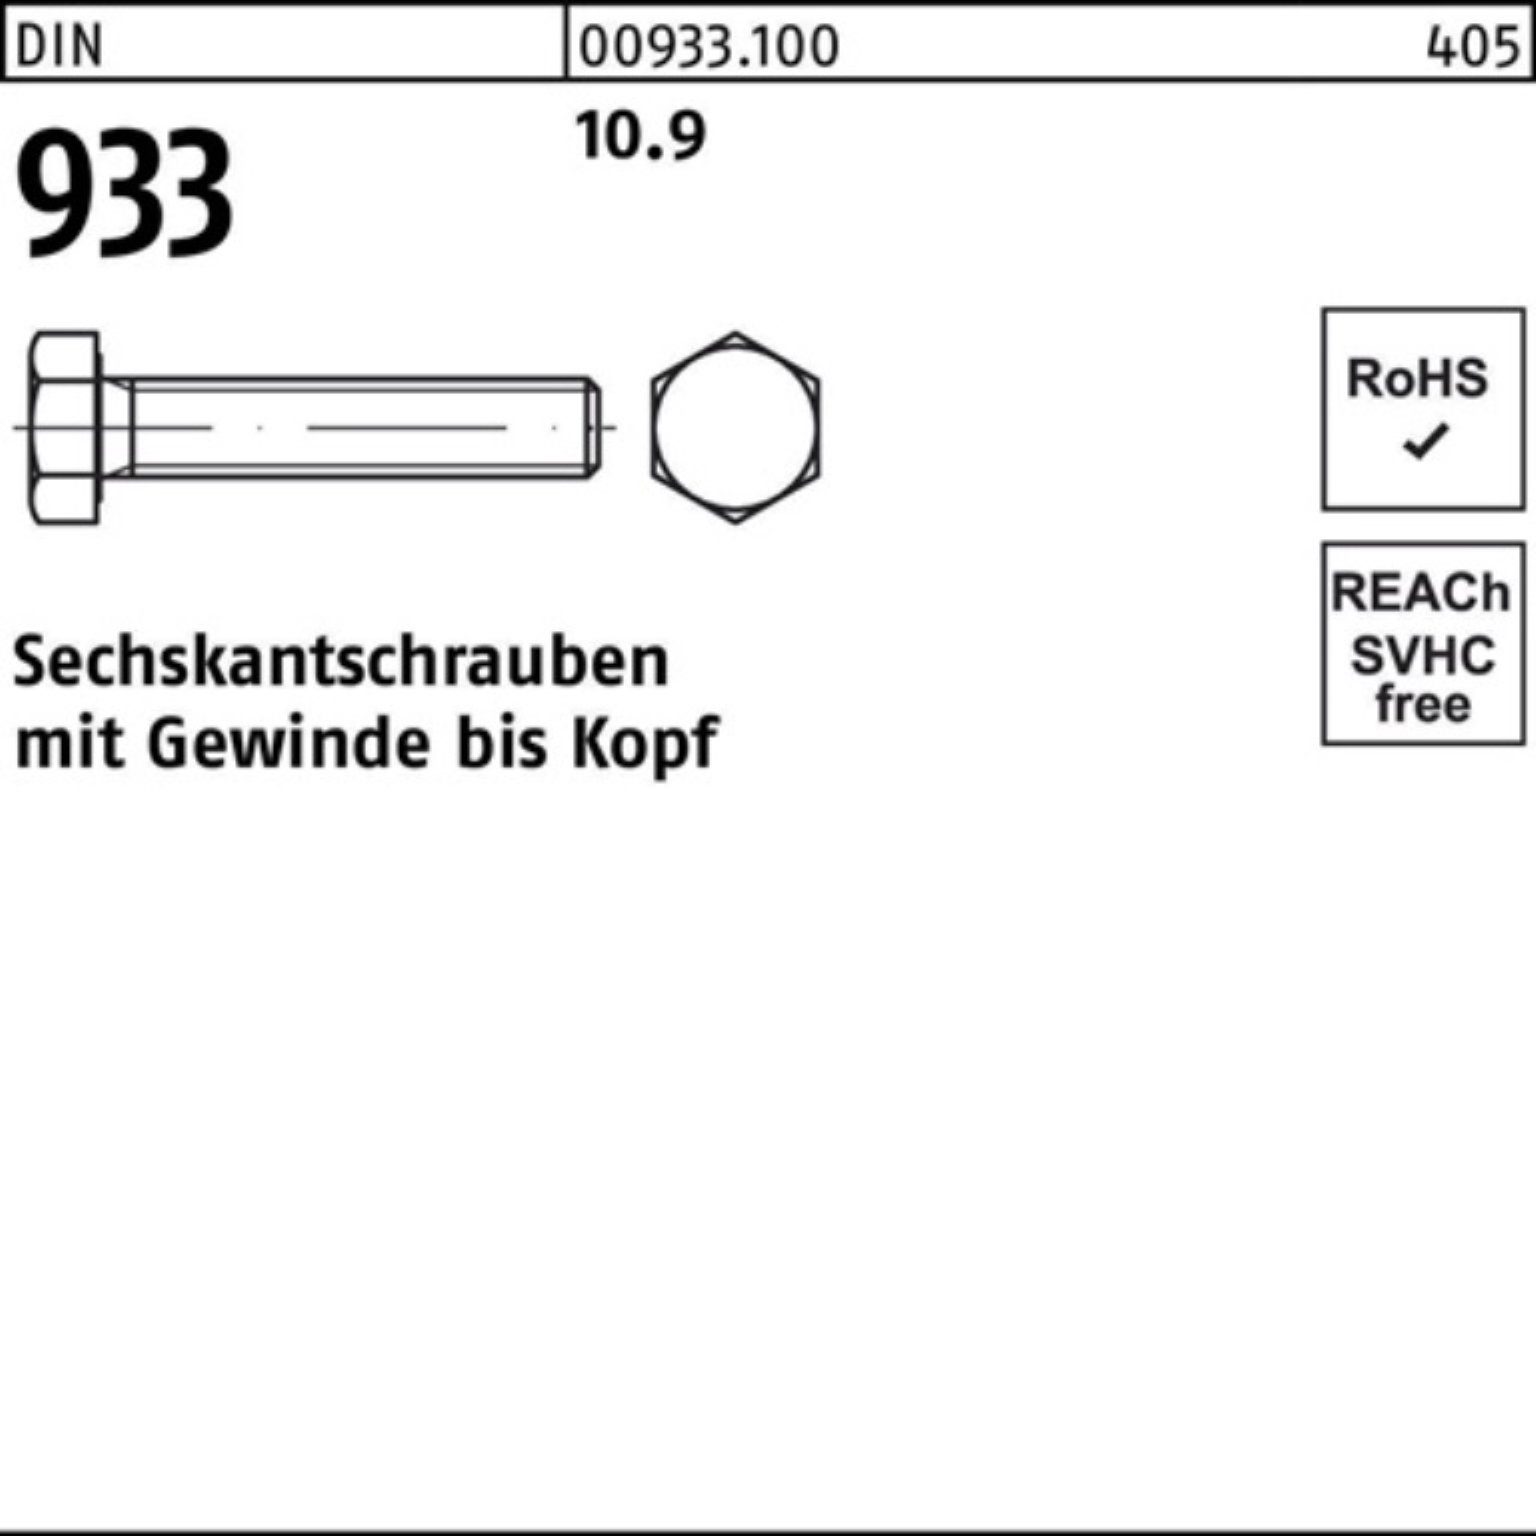 DIN Pack 100er Reyher Sechskantschraube VG 220 Sechskantschraube 933 10.9 933 1 M16x Stück DIN